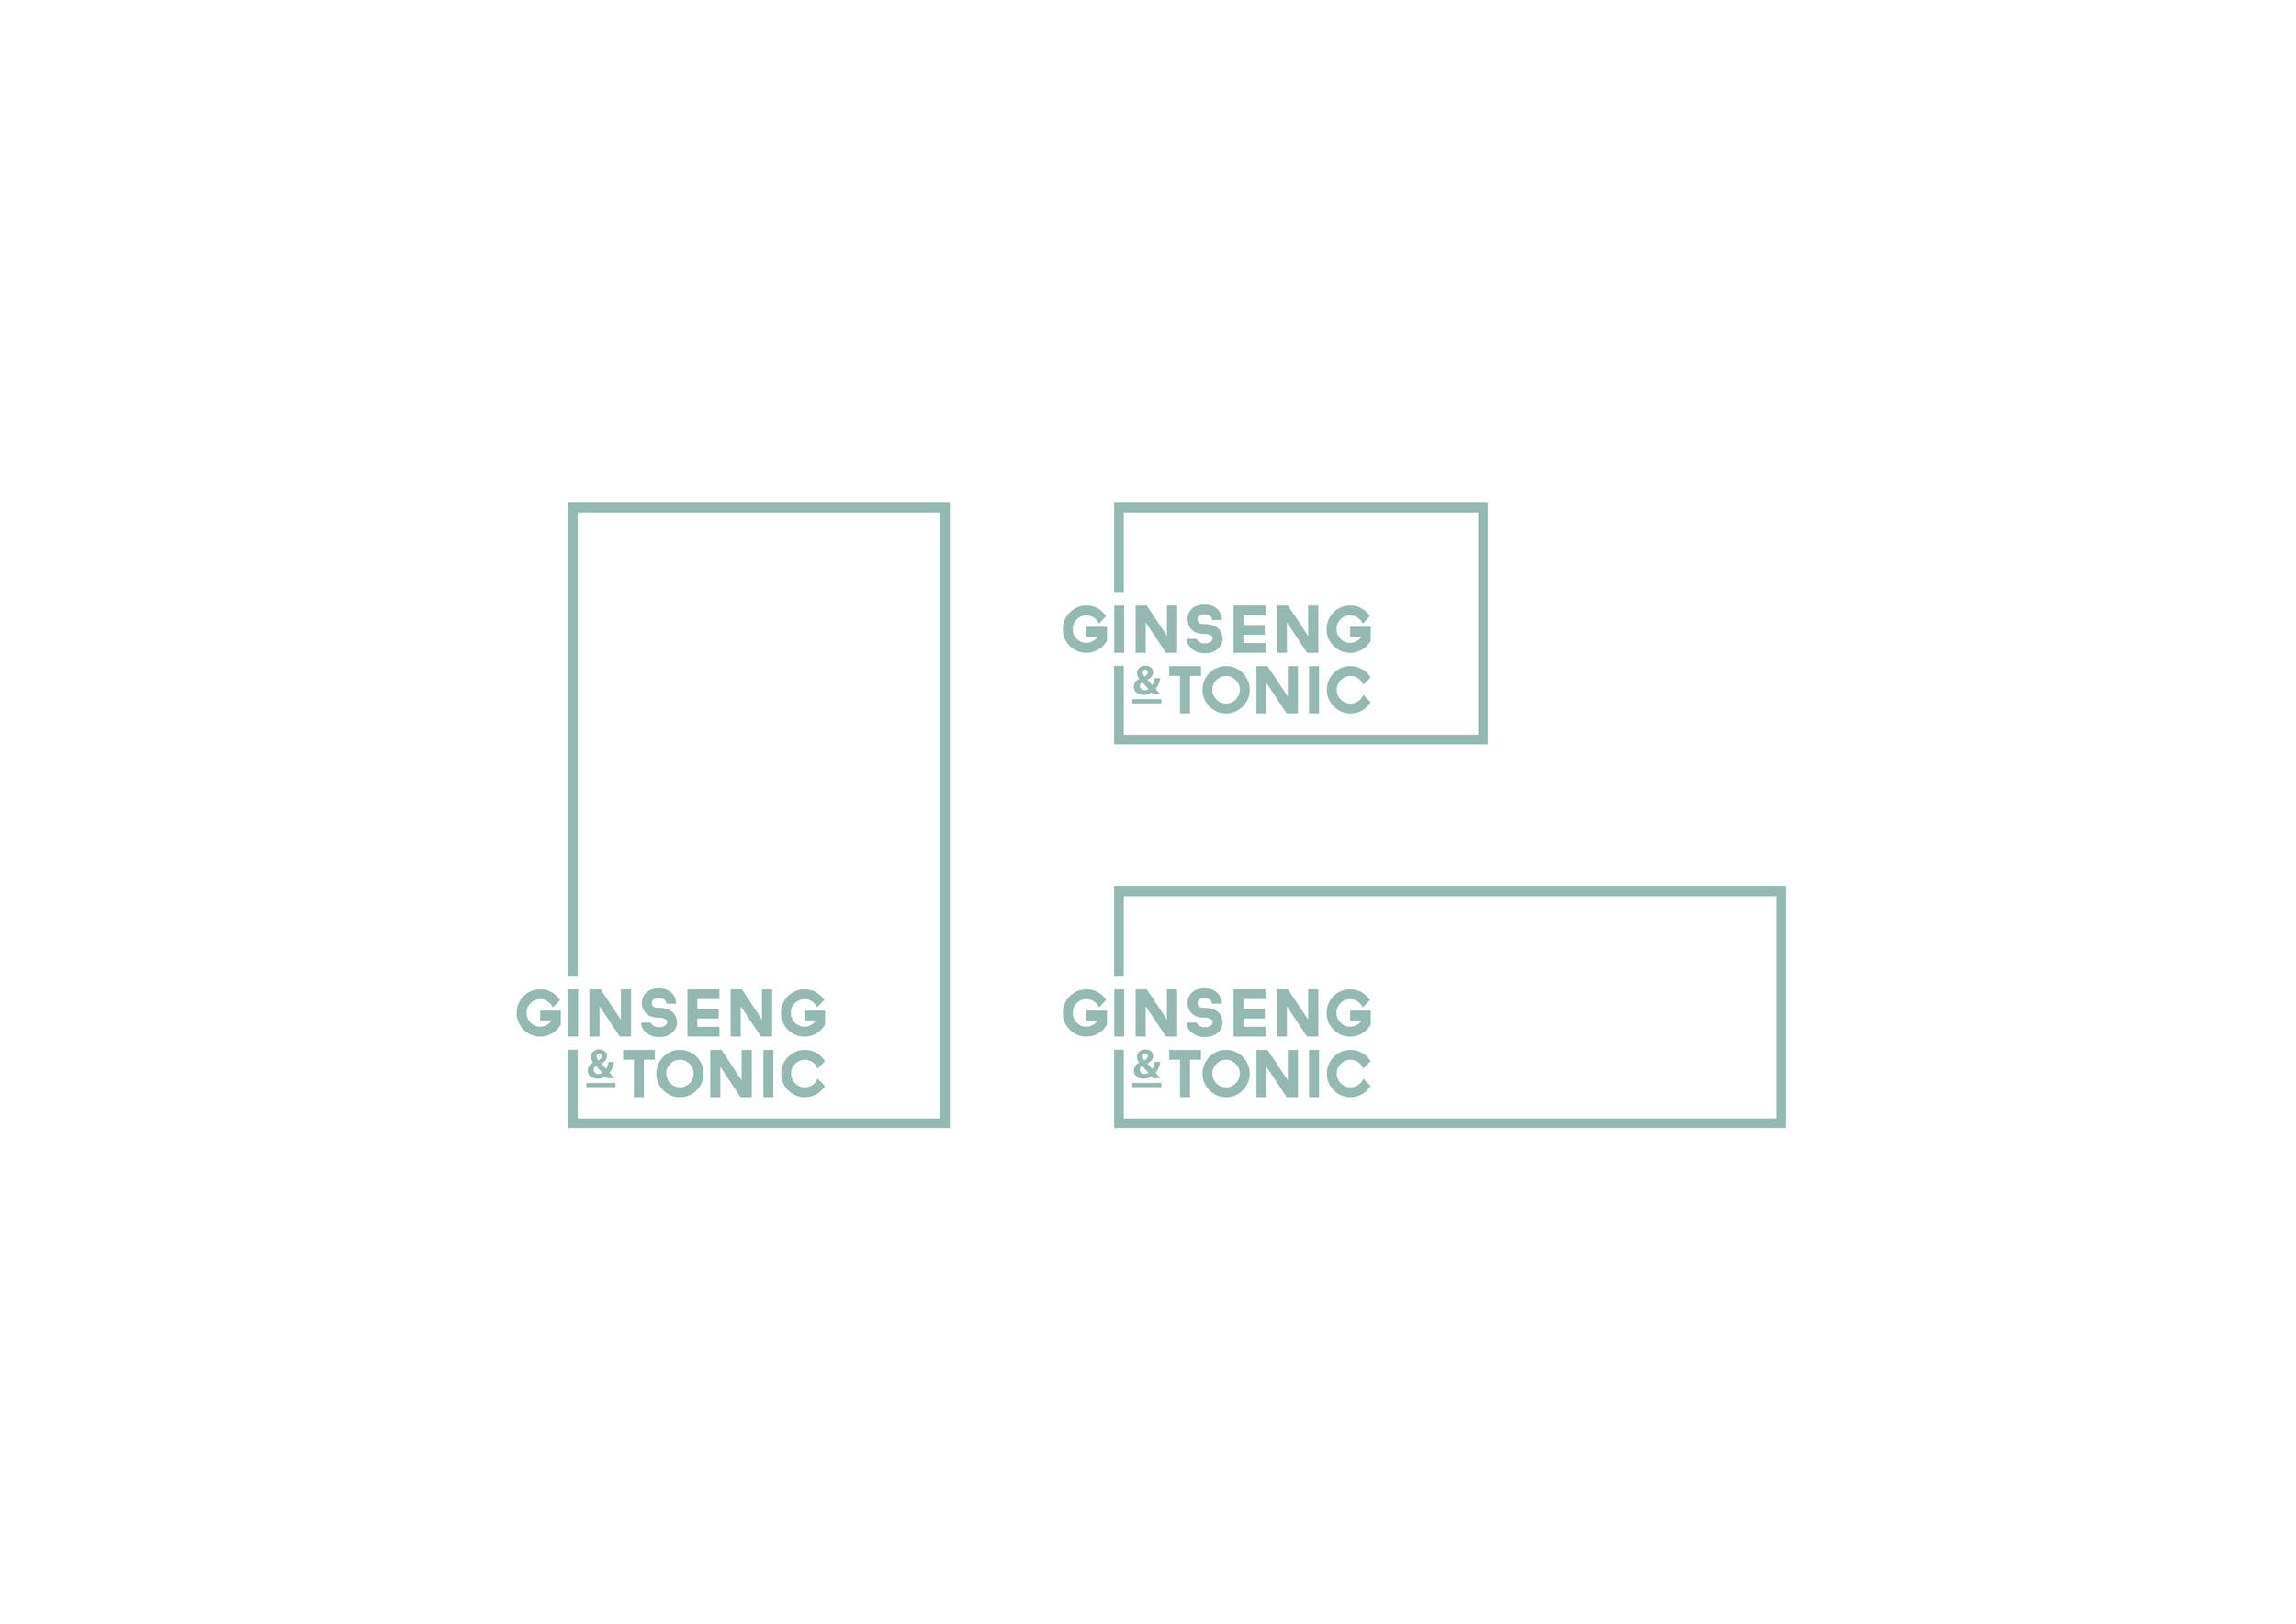 Ginseng_Tonic_01.jpg